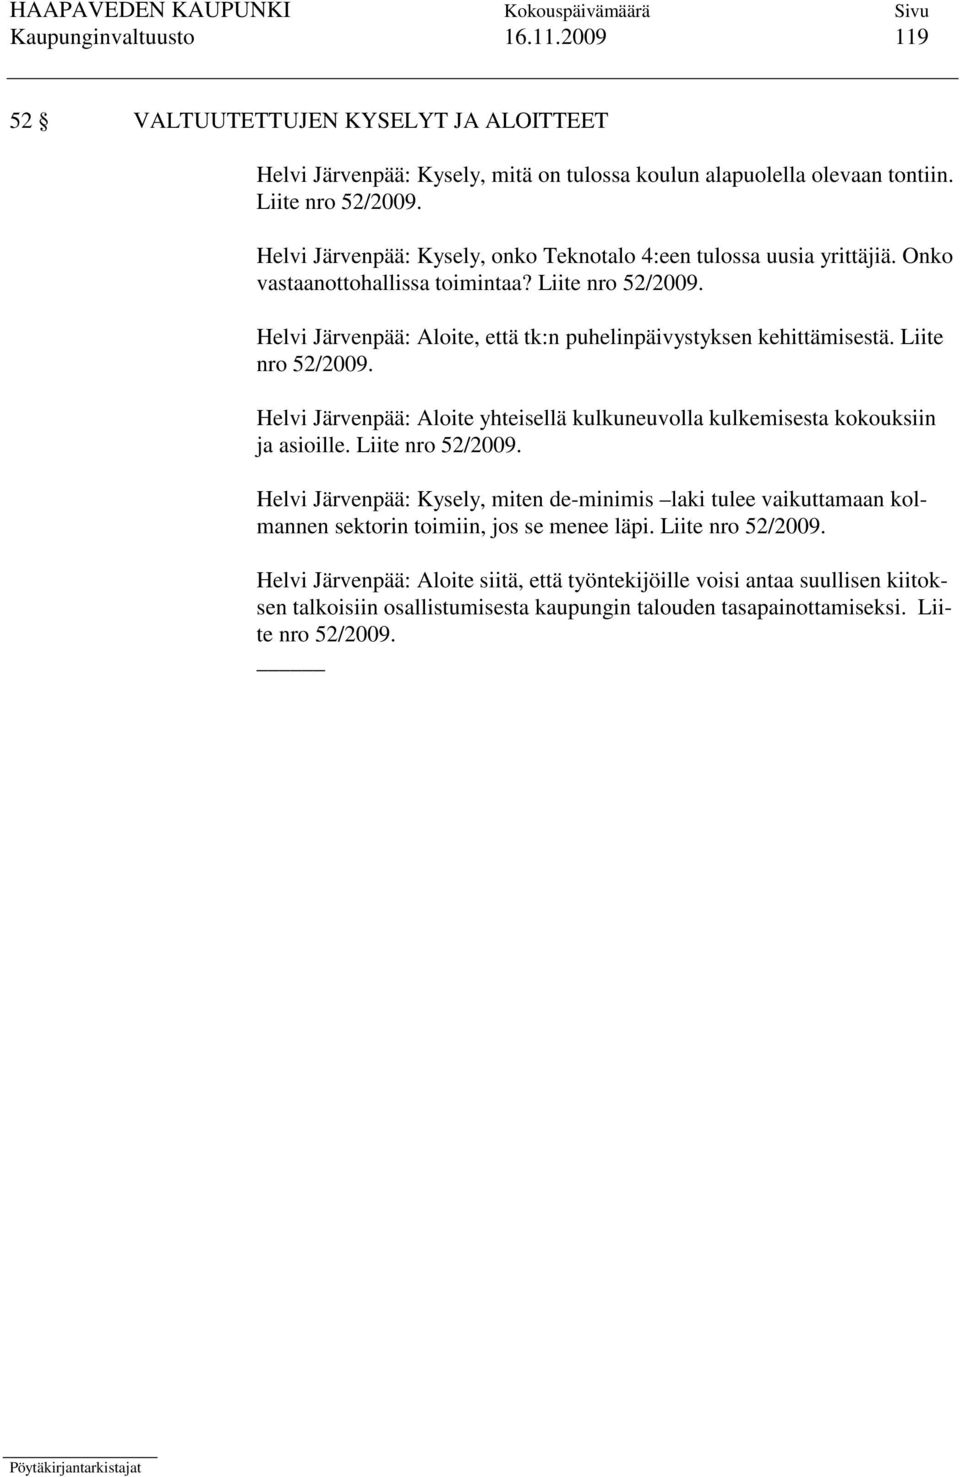 Liite nro 52/2009. Helvi Järvenpää: Aloite yhteisellä kulkuneuvolla kulkemisesta kokouksiin ja asioille. Liite nro 52/2009.